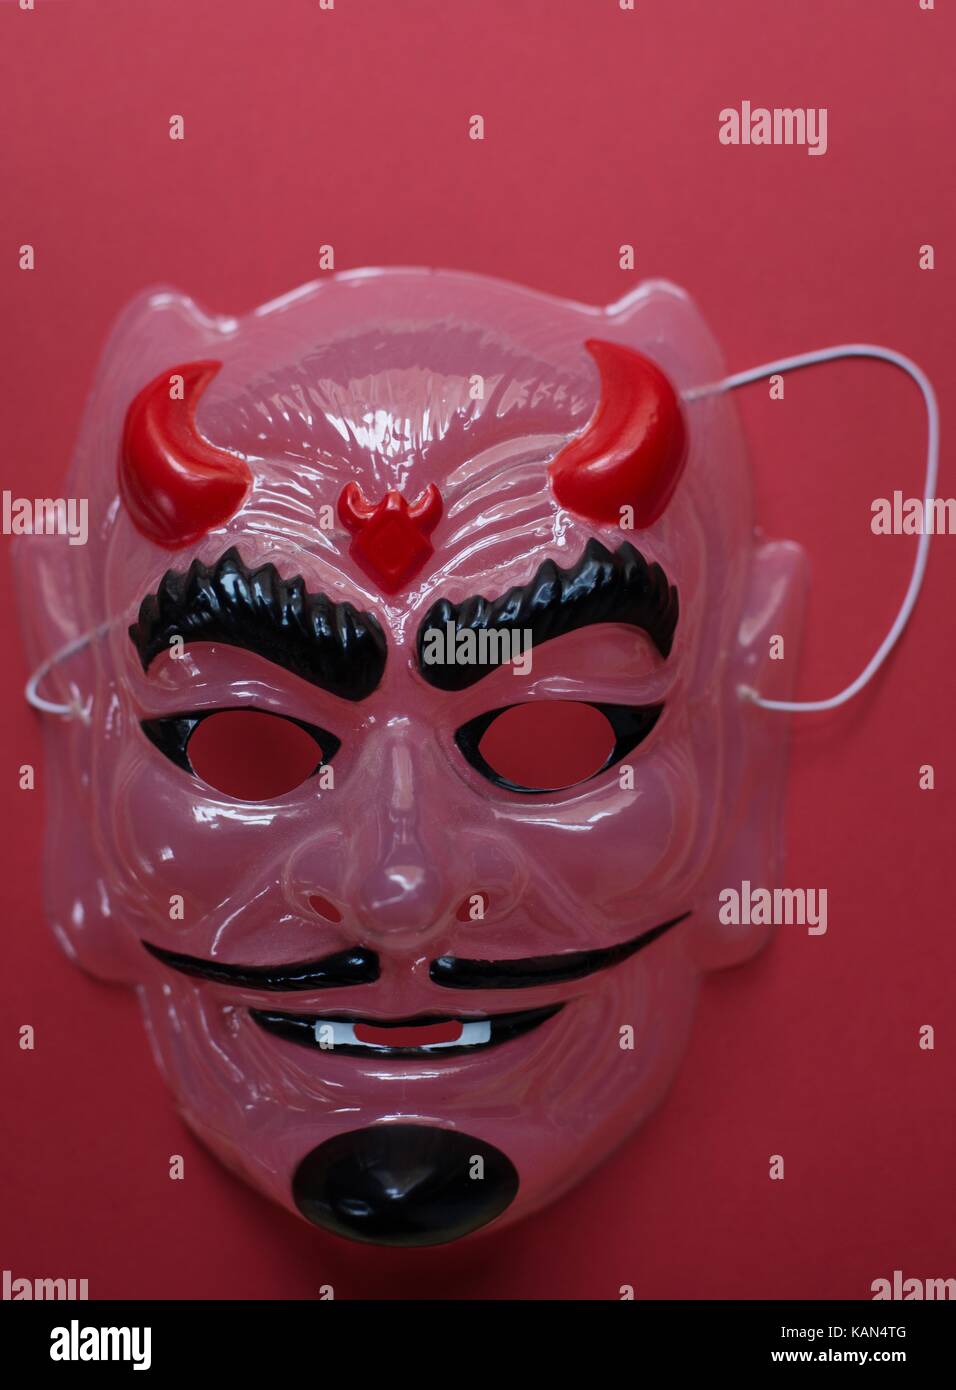 A devil mask. Stock Photo